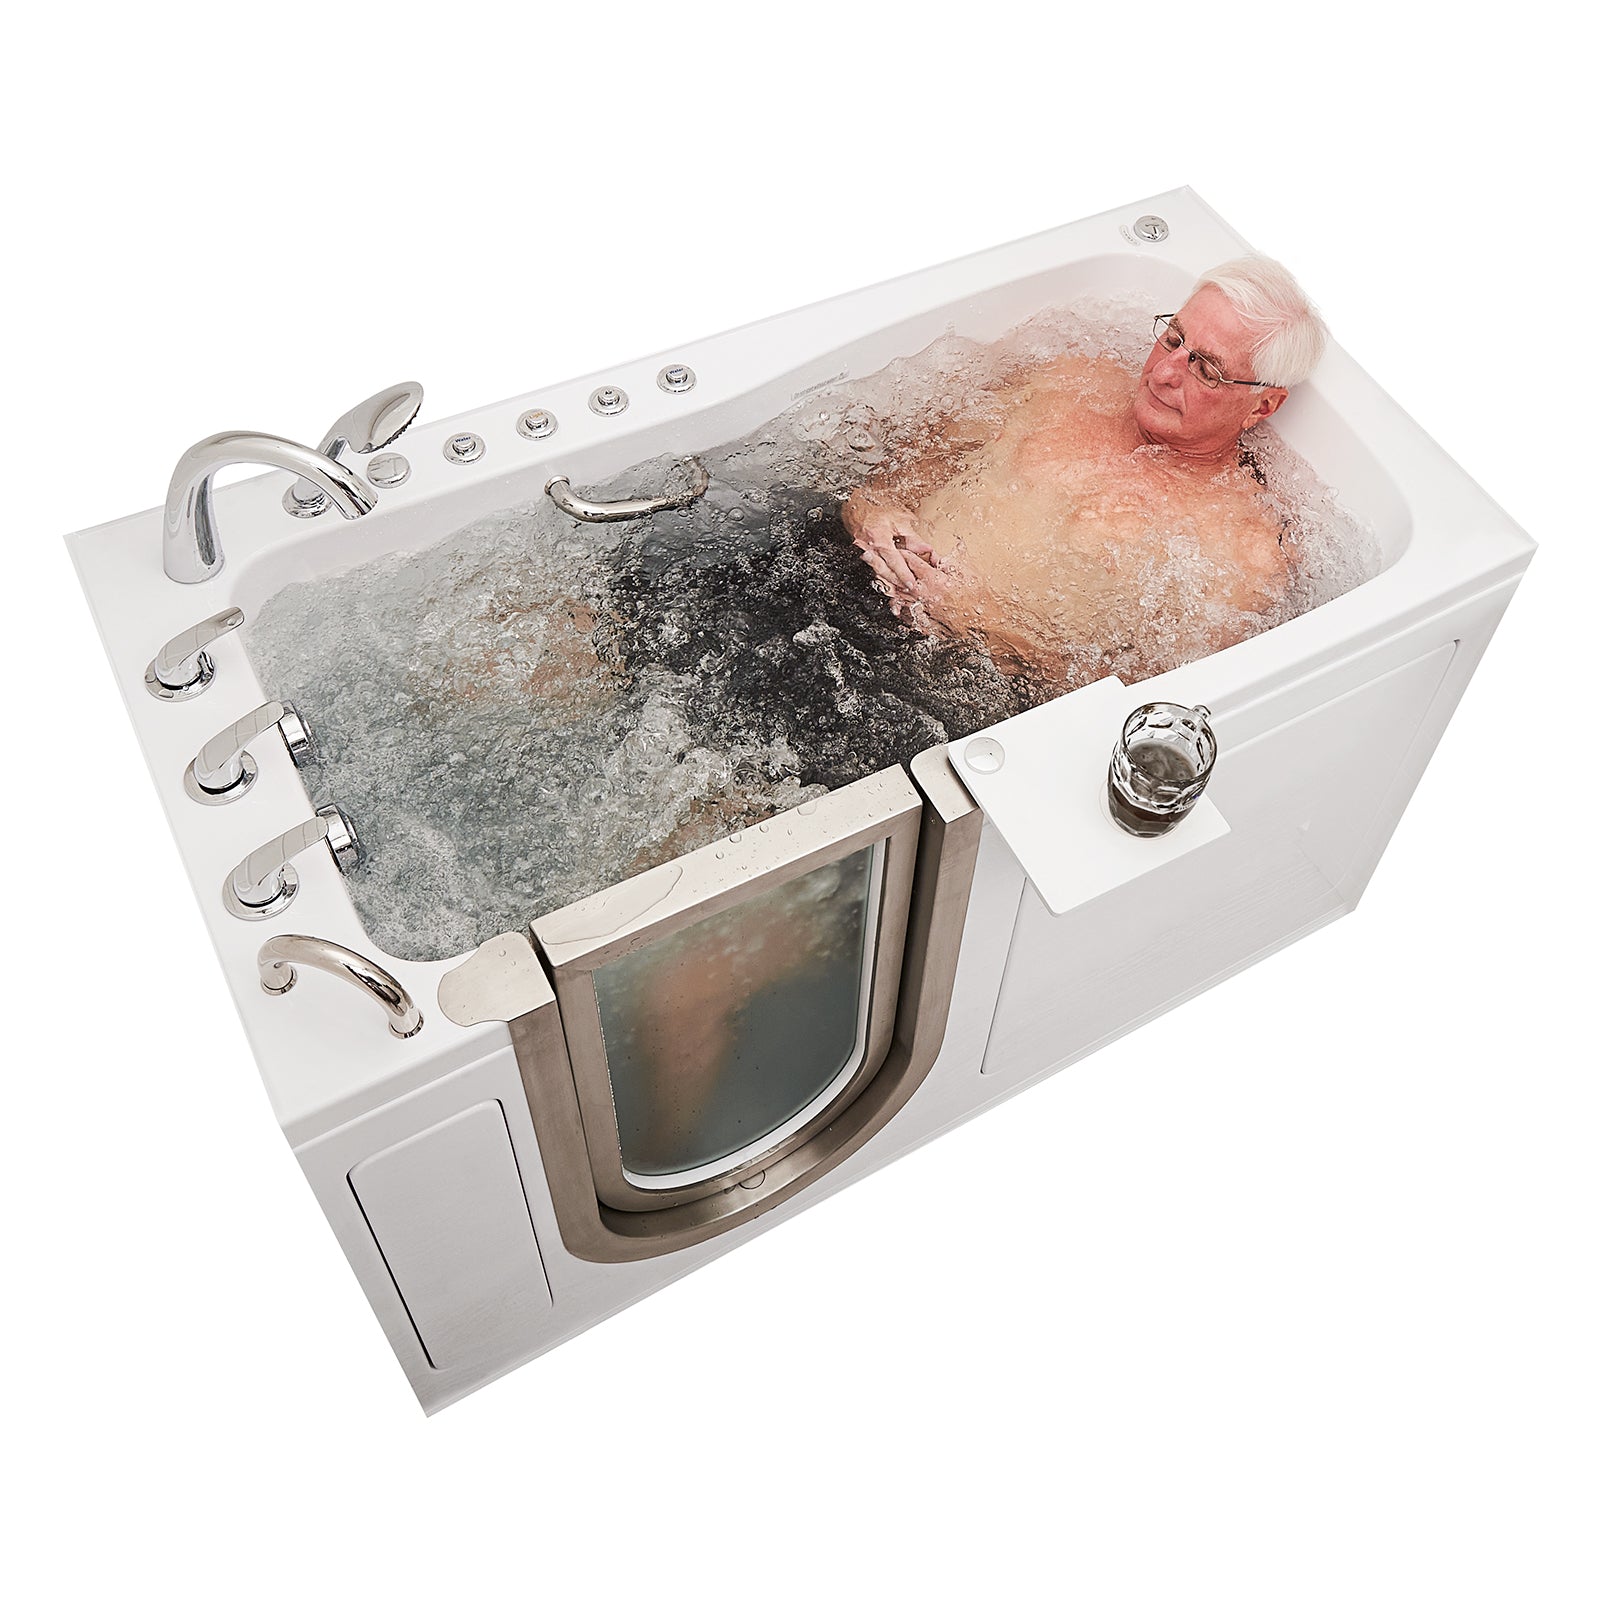 Digital Air Bubble Bath Tub Ozone Sterilization Body Spa Massage